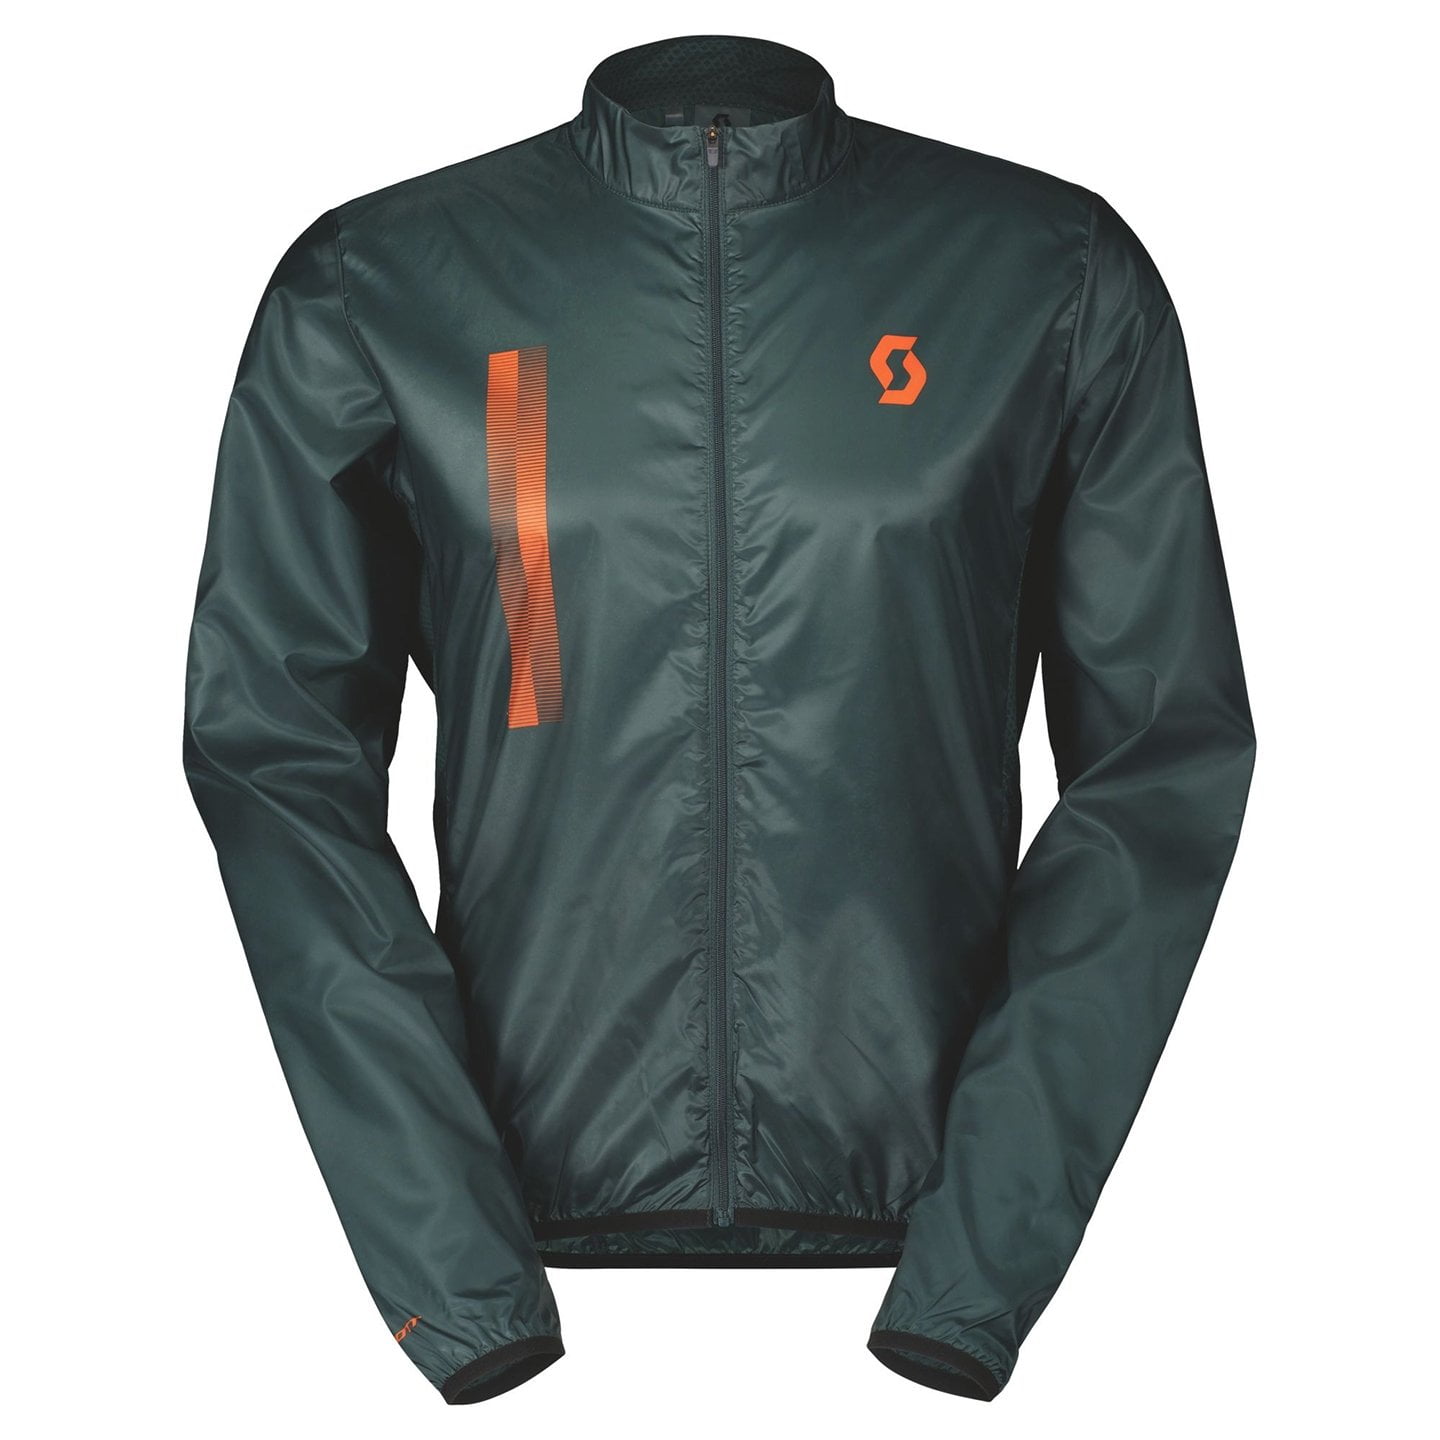 SCOTT RC Team Windbreaker Wind Jacket, for men, size M, Bike jacket, Cycling clothing